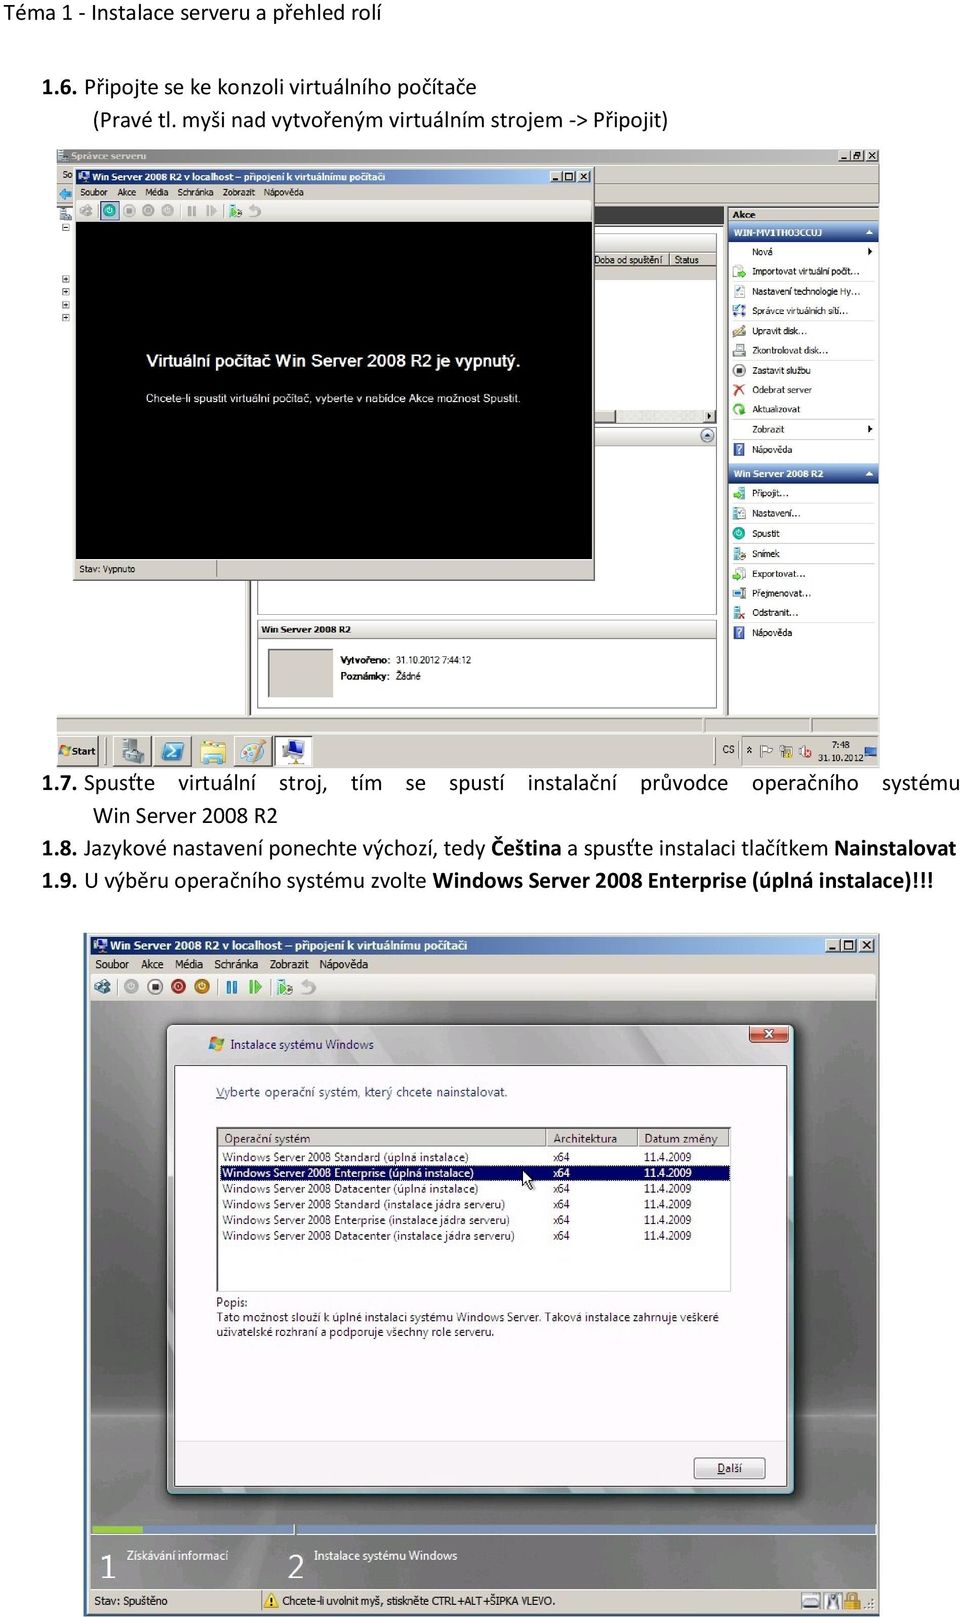 Spusťte virtuální stroj, tím se spustí instalační průvodce operačního systému Win Server 2008 